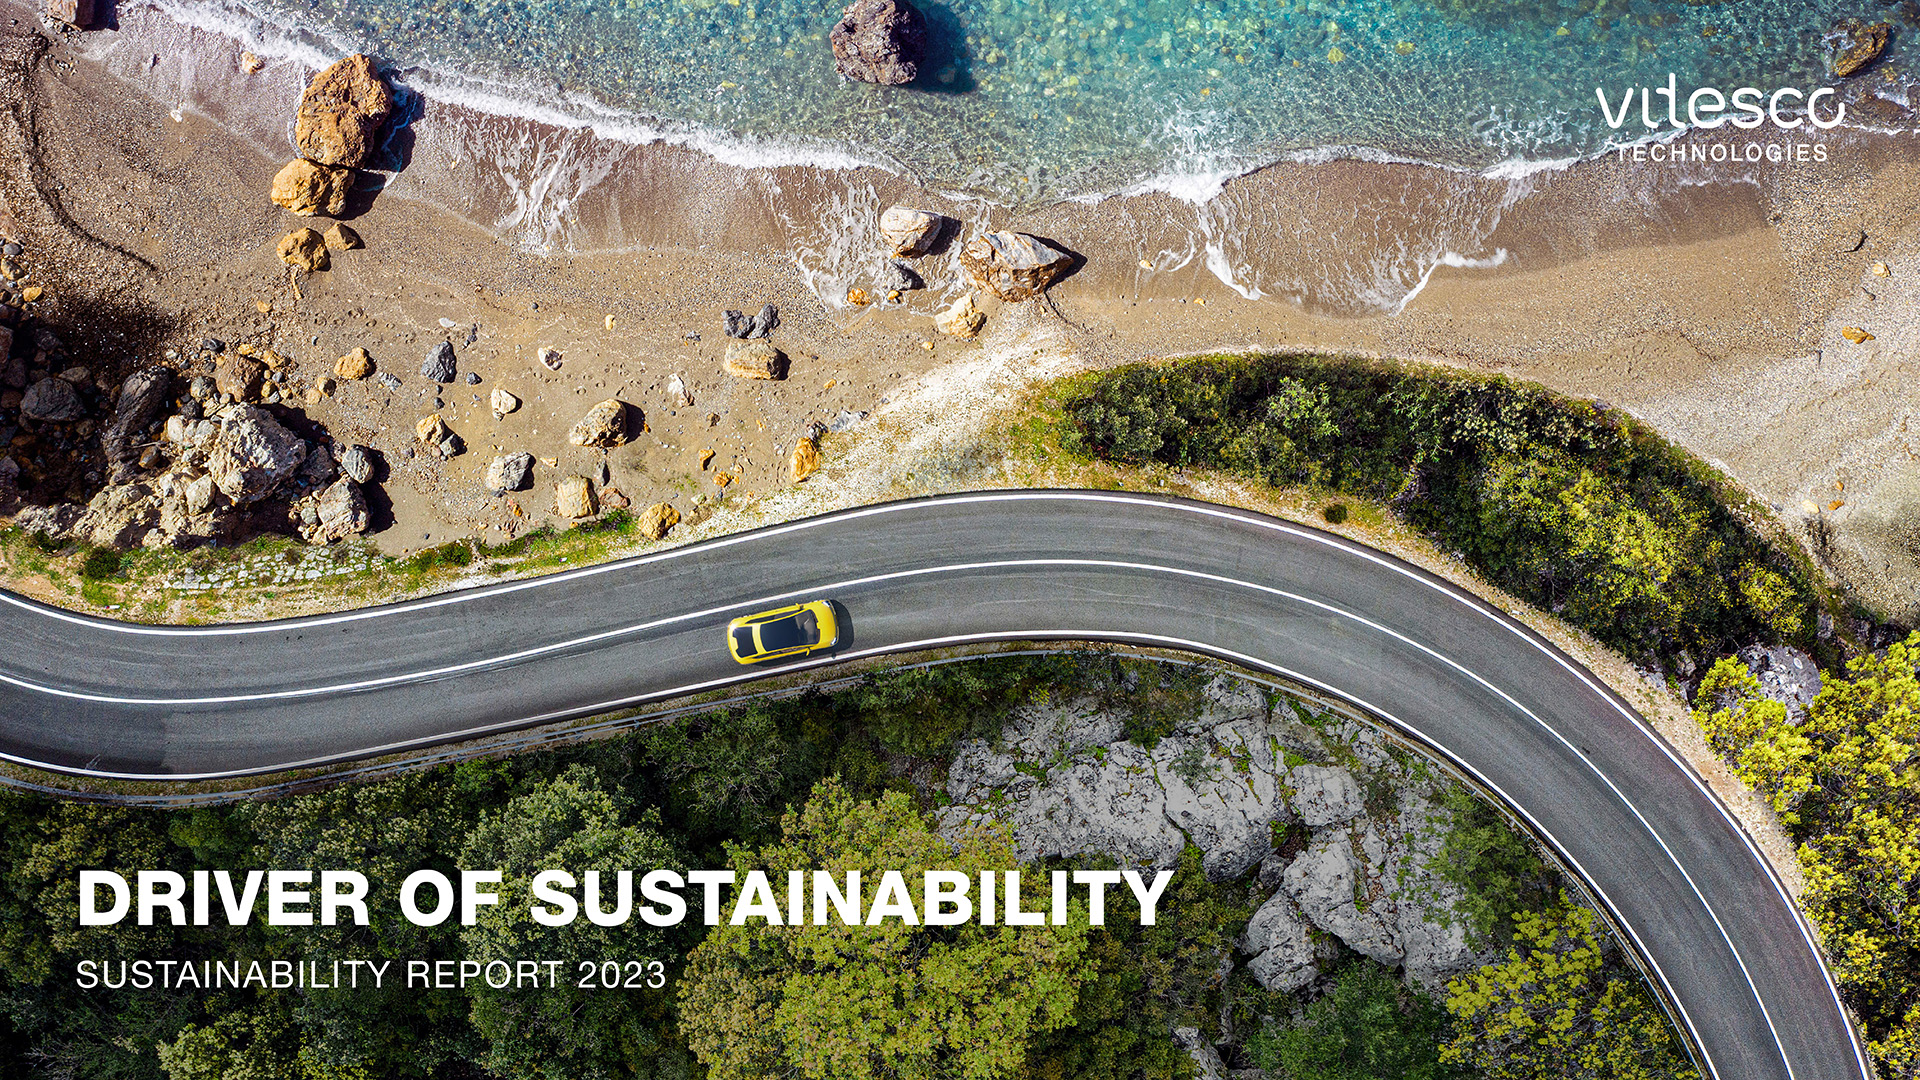 A Vitesco Technologies közzétette a harmadik független fenntarthatósági jelentését